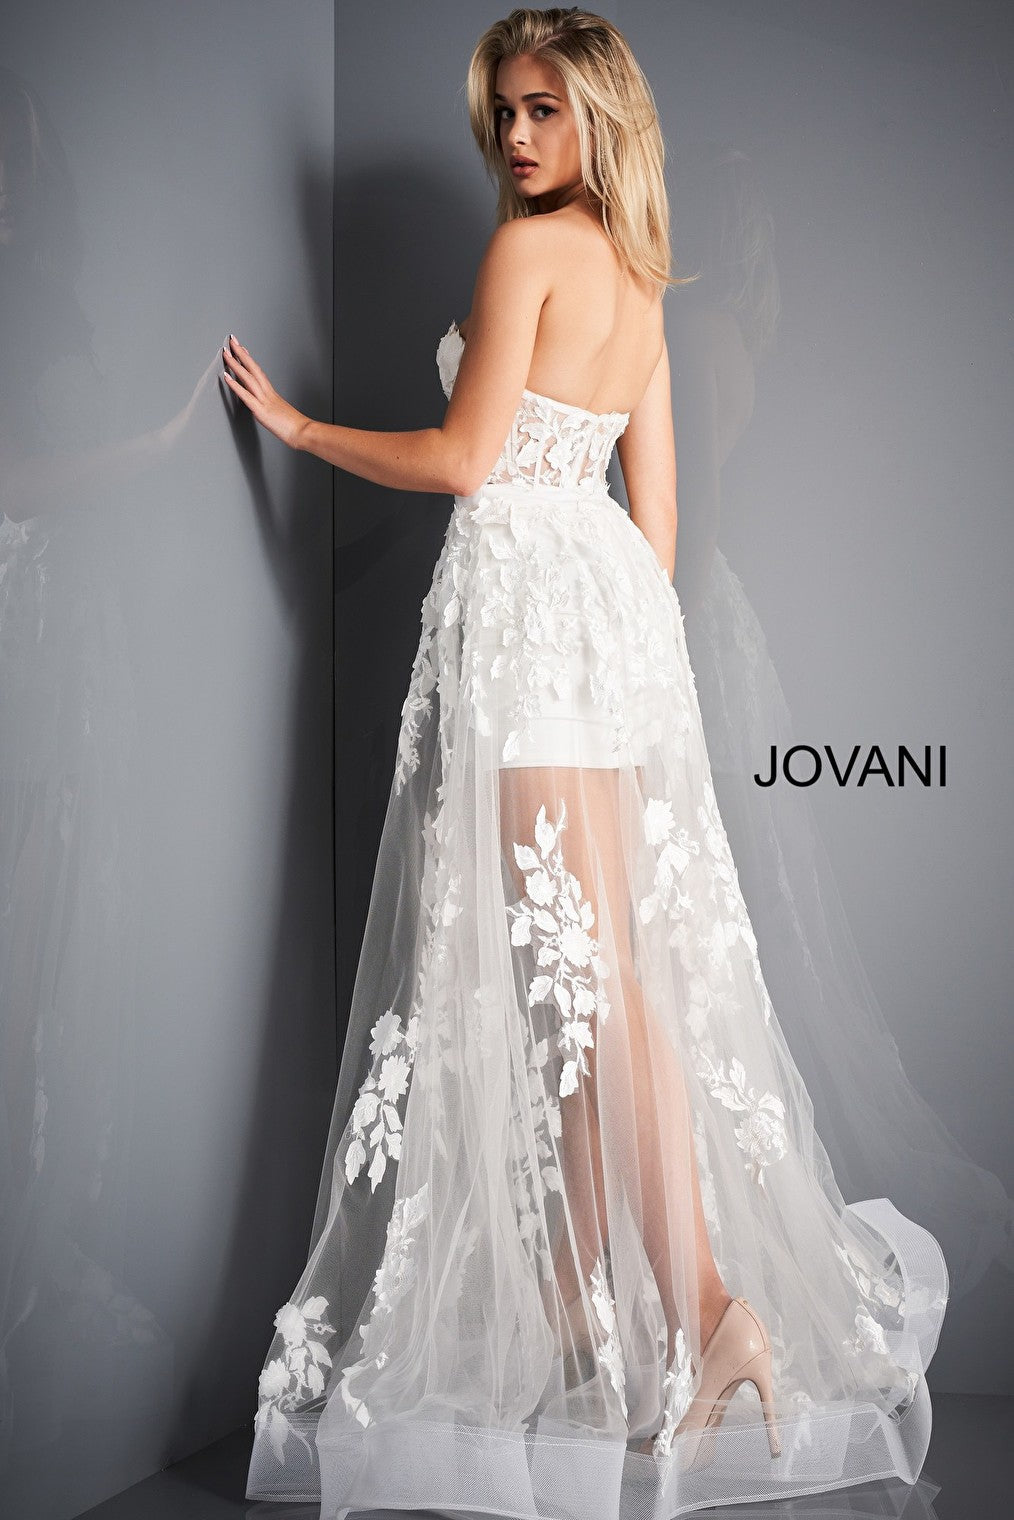 Ivory floral Jovani informal wedding dress 02845